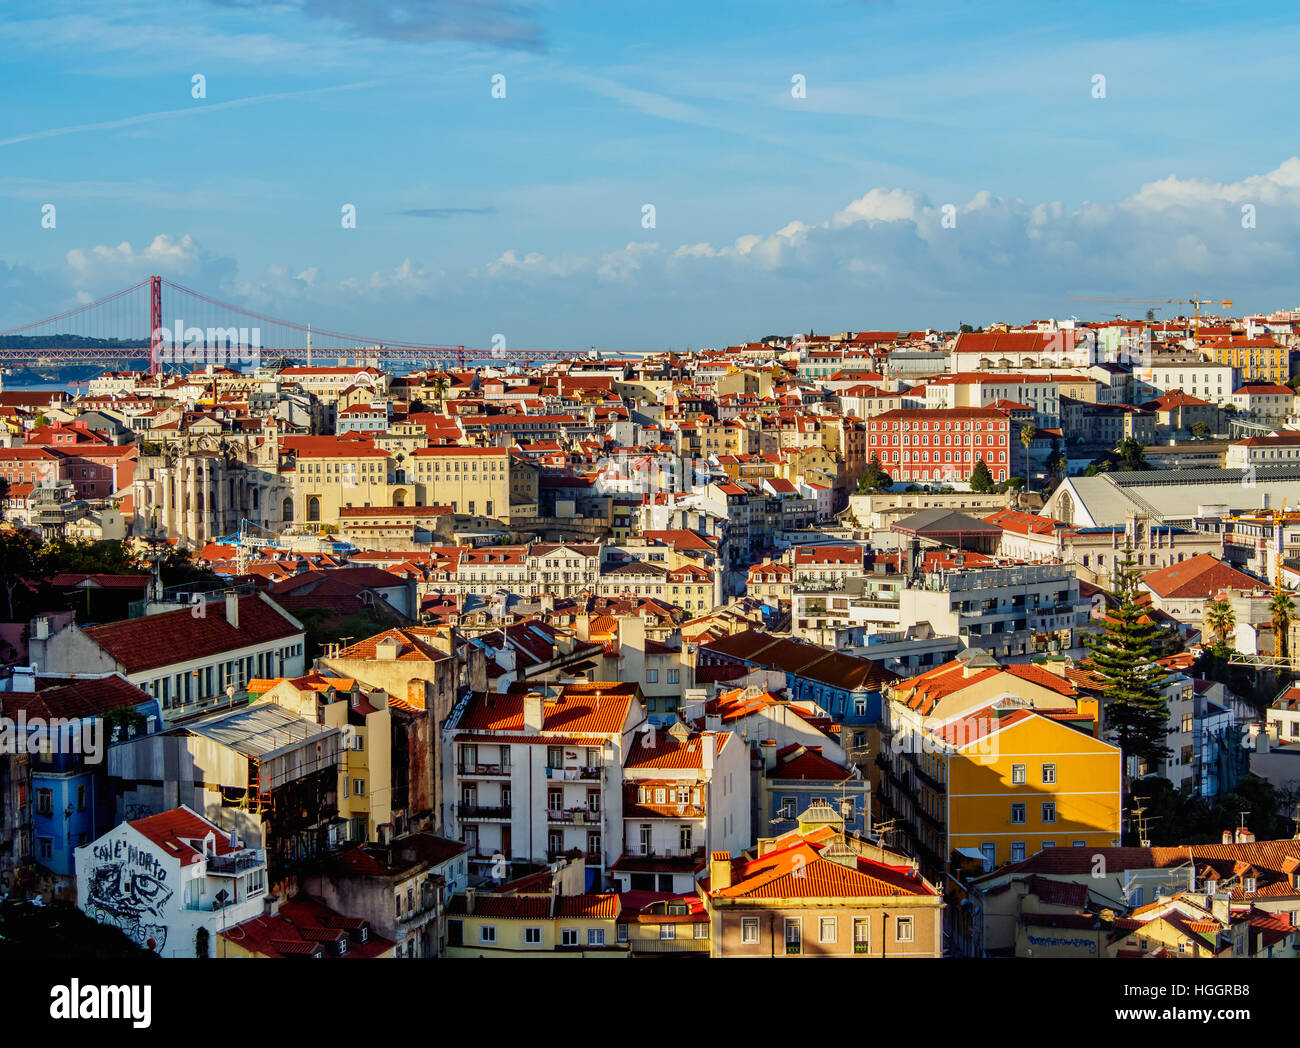 Portugal, Lisbonne, paysage urbain vu du Miradouro da Graca. Banque D'Images